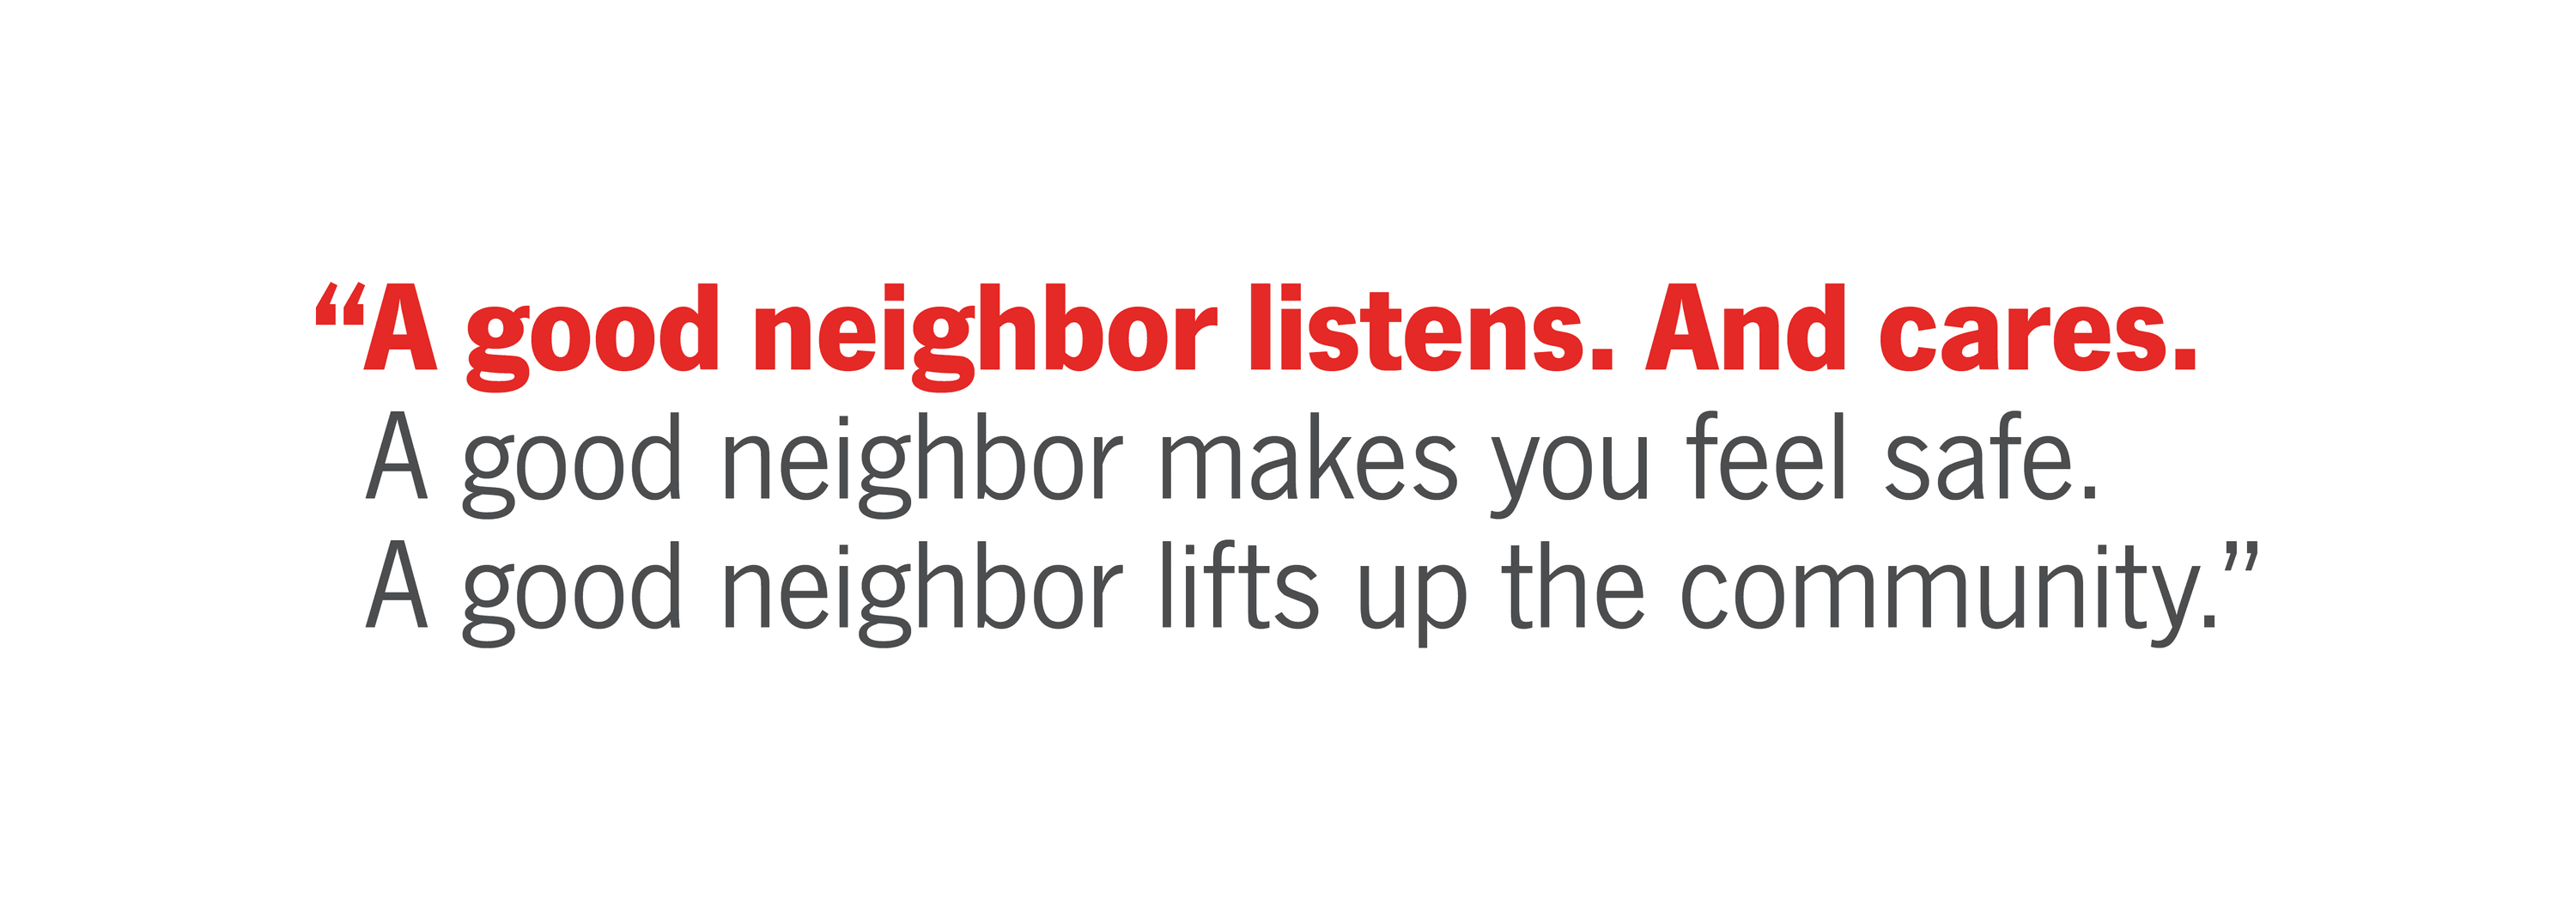 A Good Neighbor Listens. And Cares